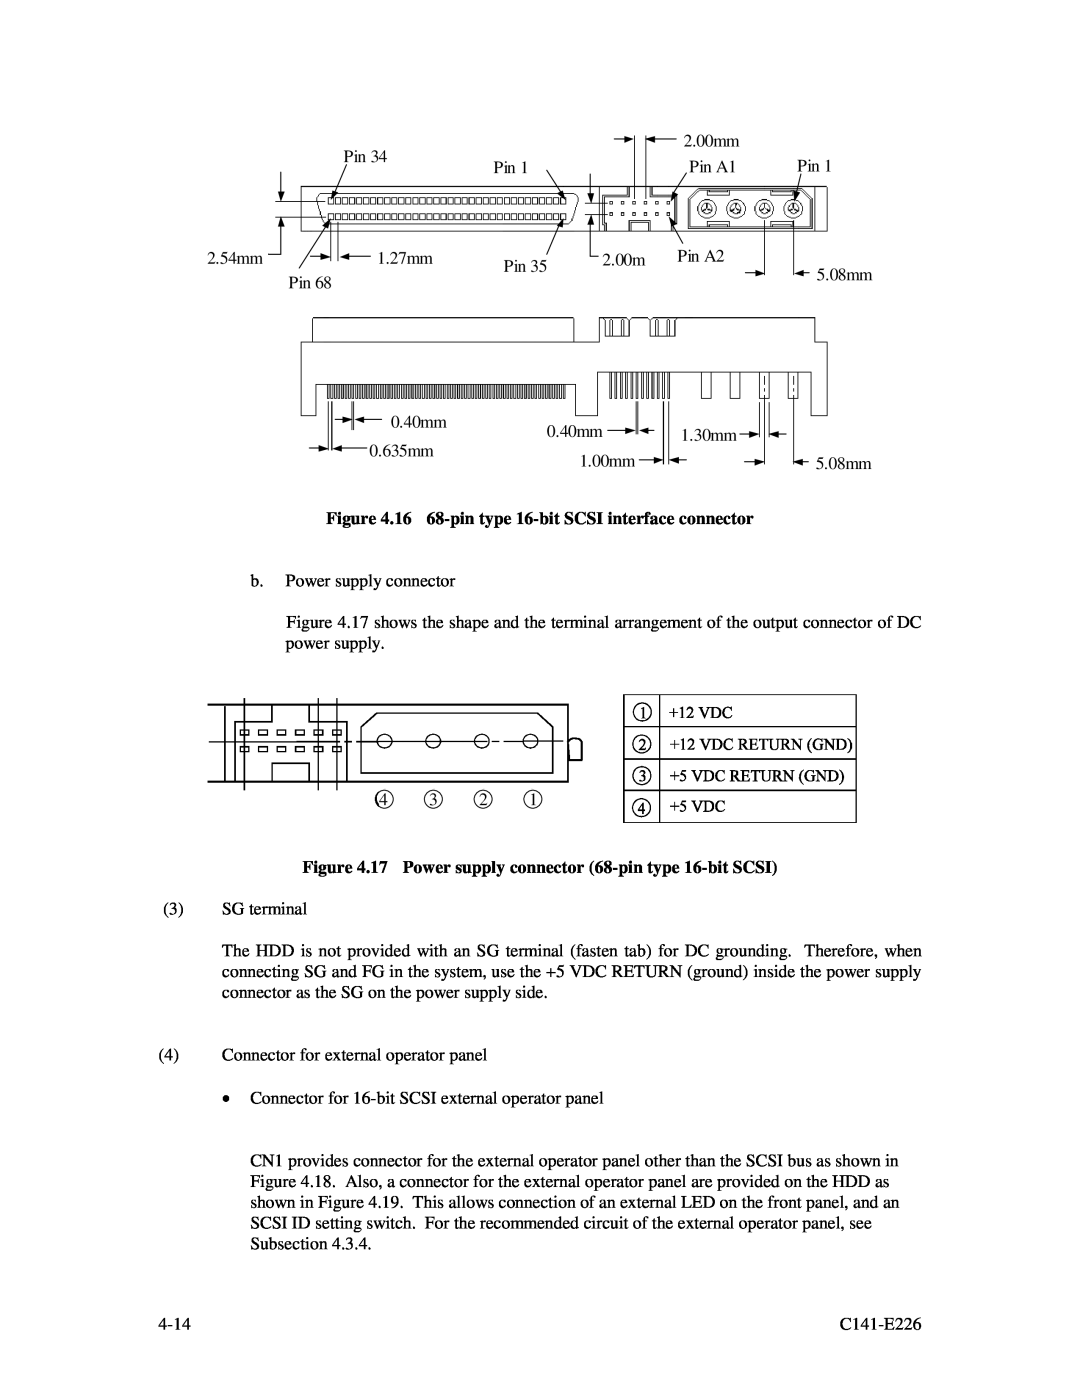 Fujitsu MAW3073NC/NP 16 68-pin type 16-bit SCSI interface connector, 17 Power supply connector 68-pin type 16-bit SCSI 